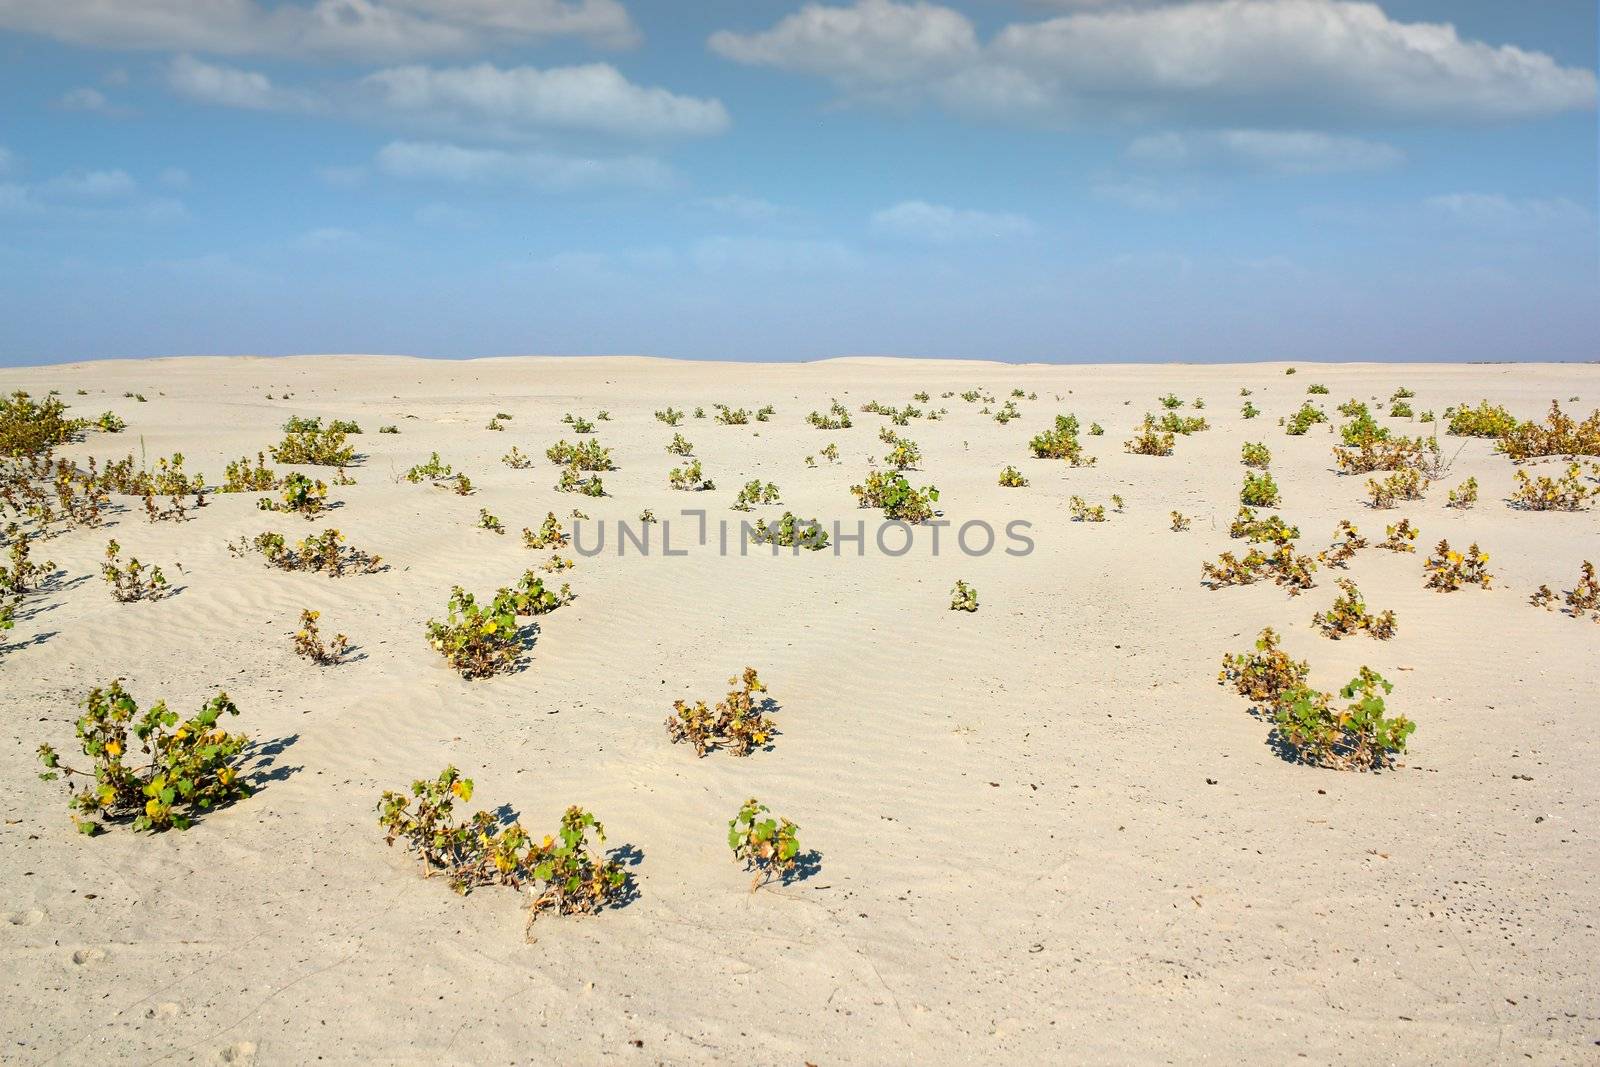 sand desert